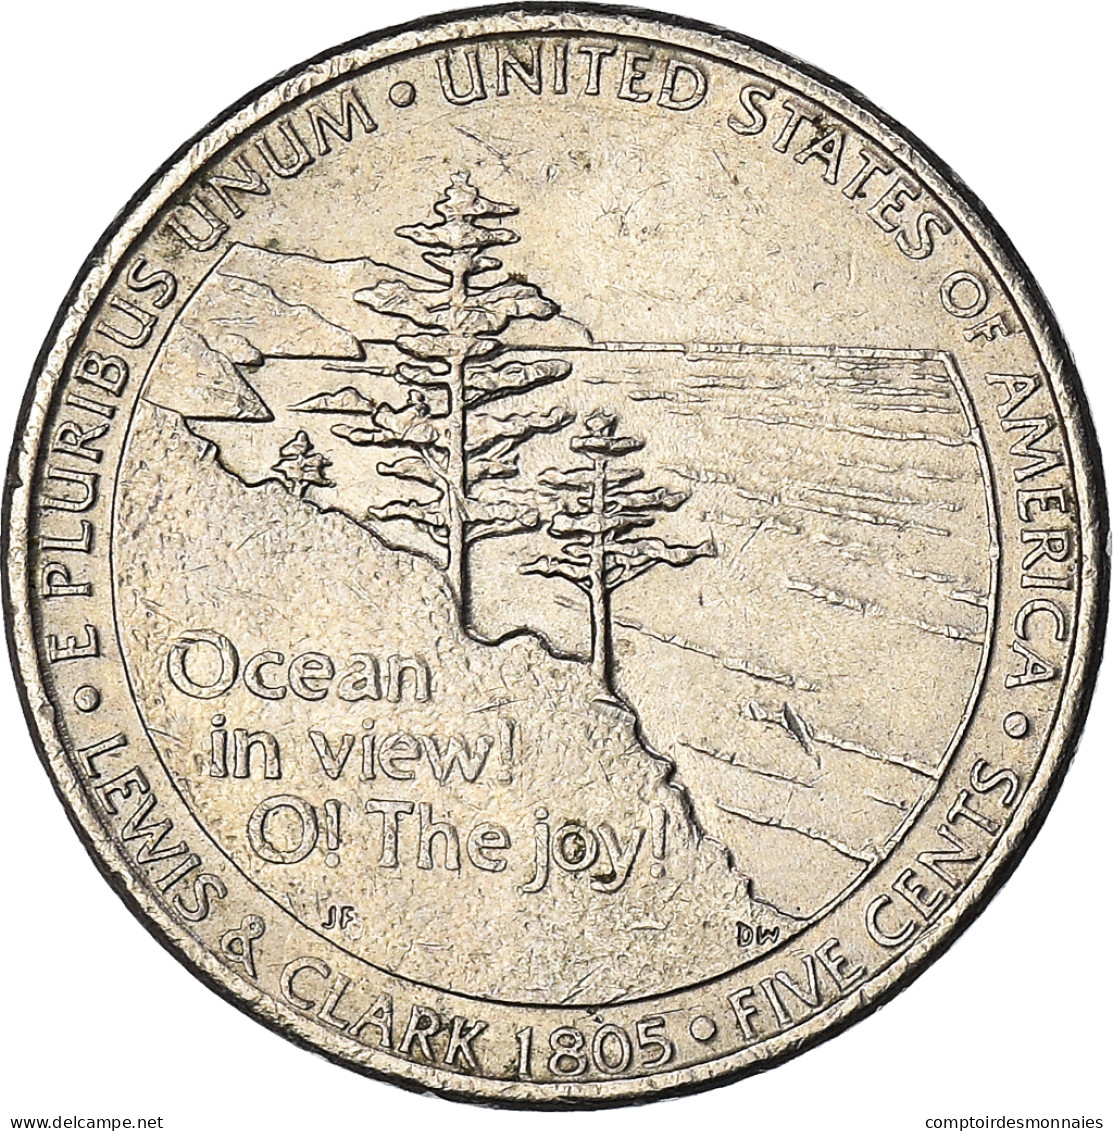 Monnaie, États-Unis, 5 Cents, 2005 - 1938-…: Jefferson